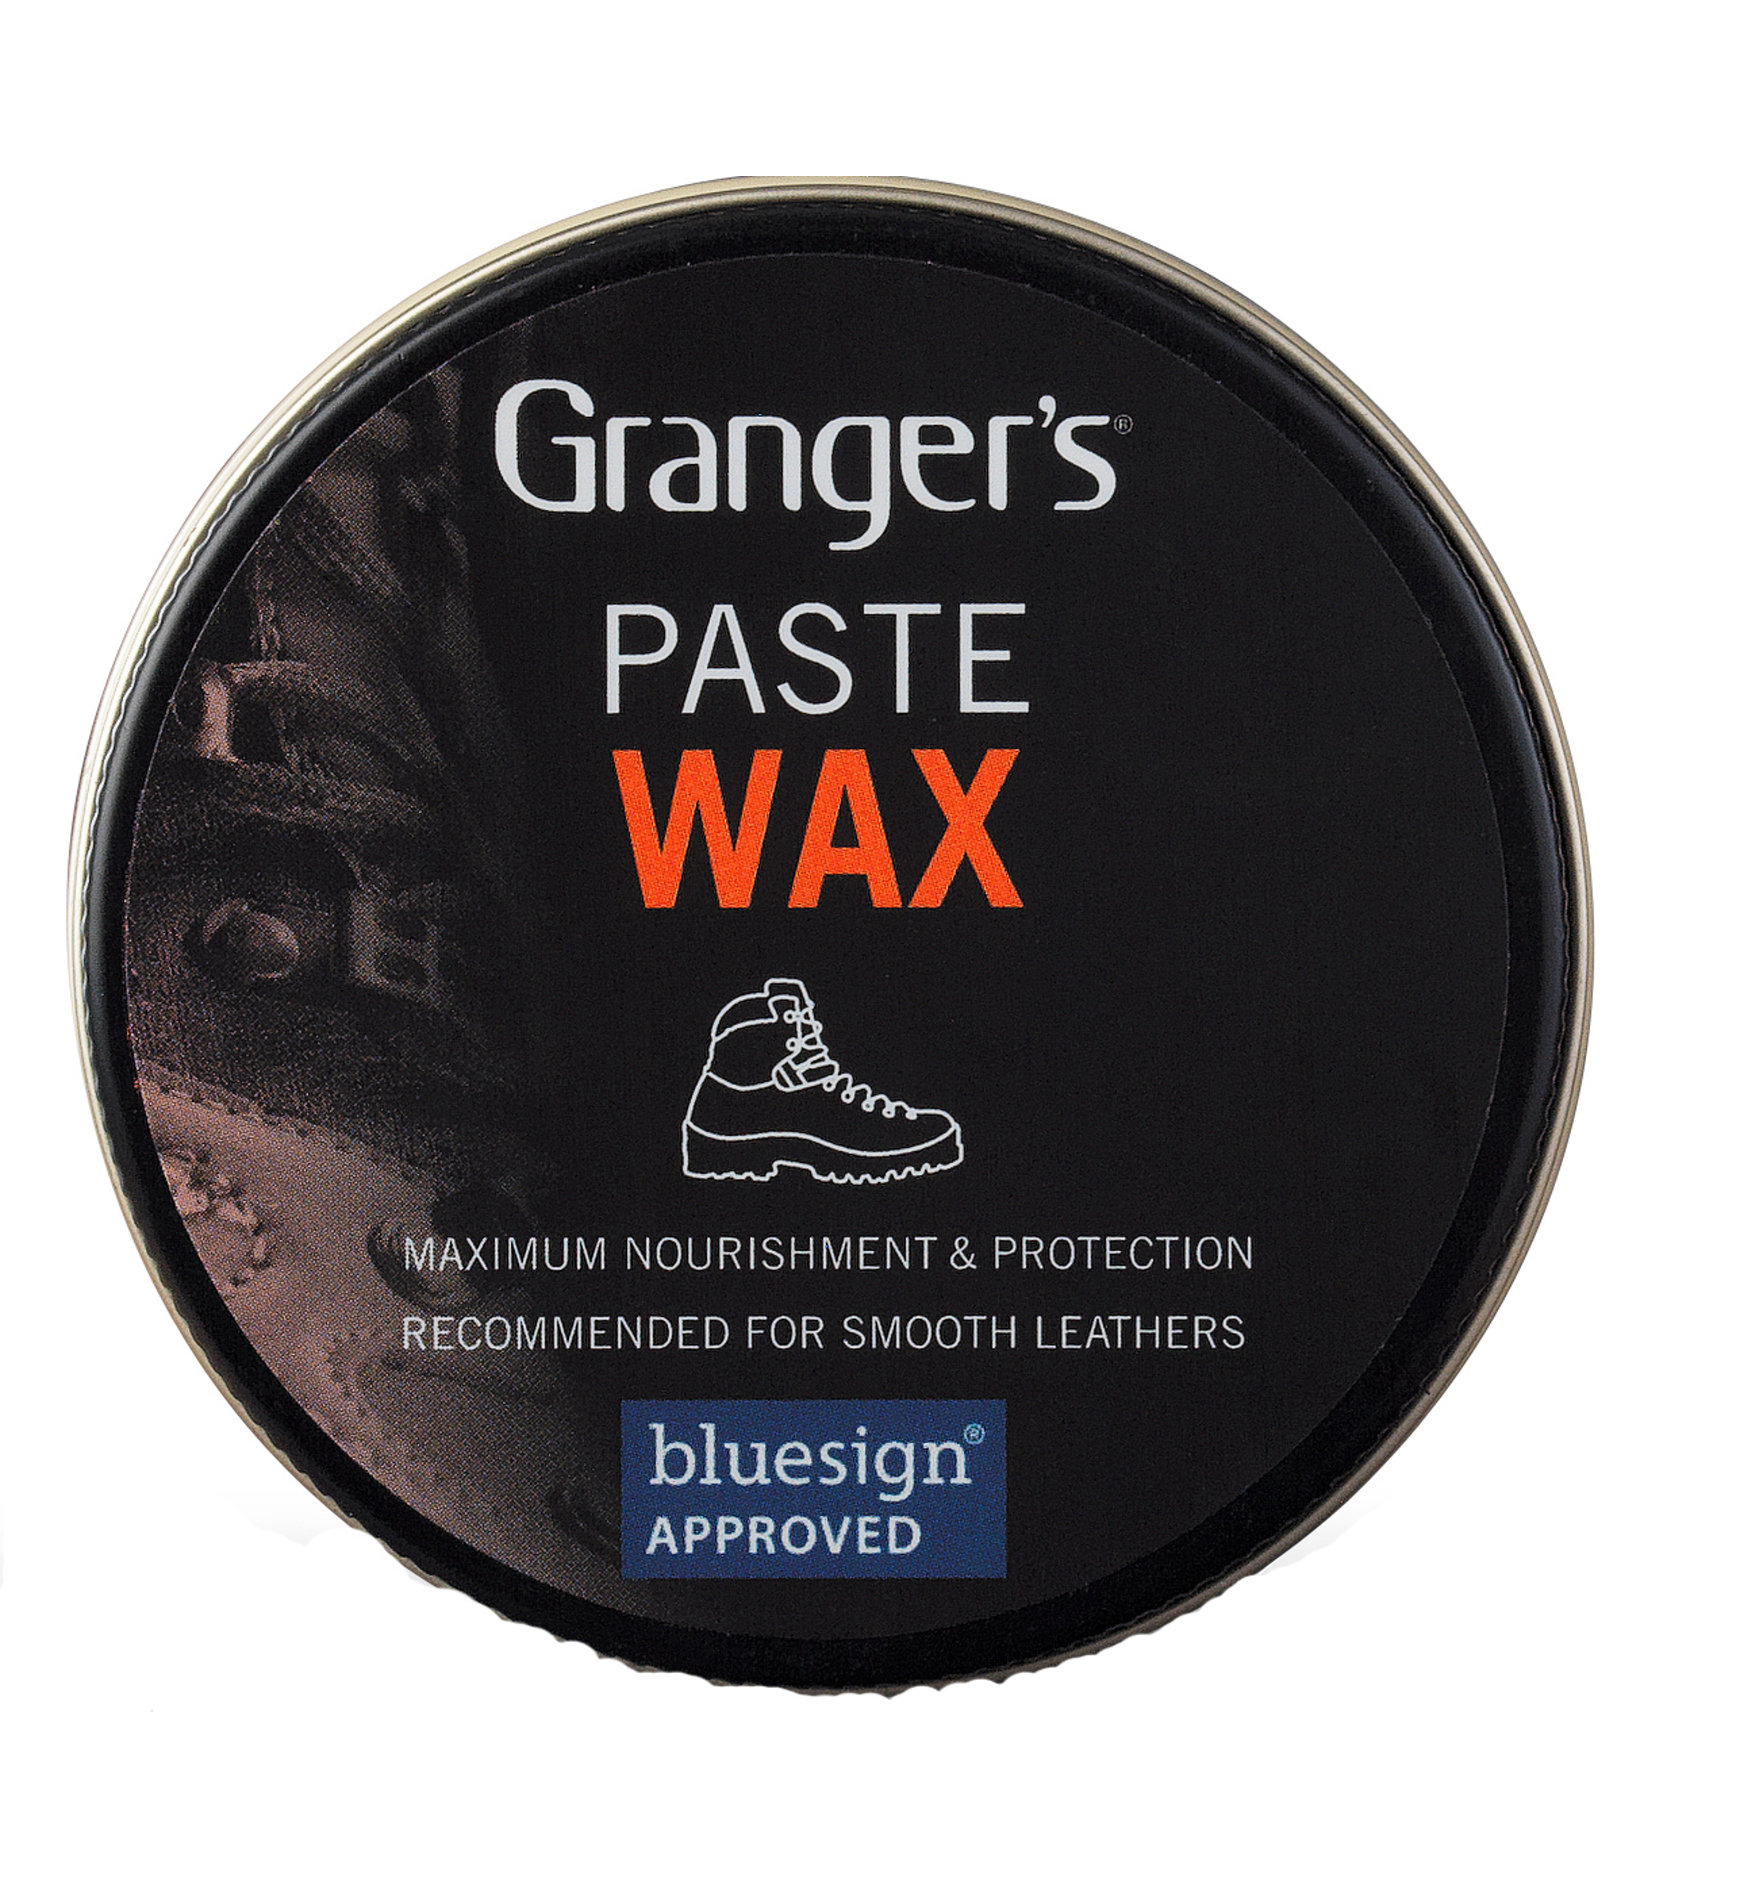 Granger's Paste Wax Schuhpflegecreme für Glattleder